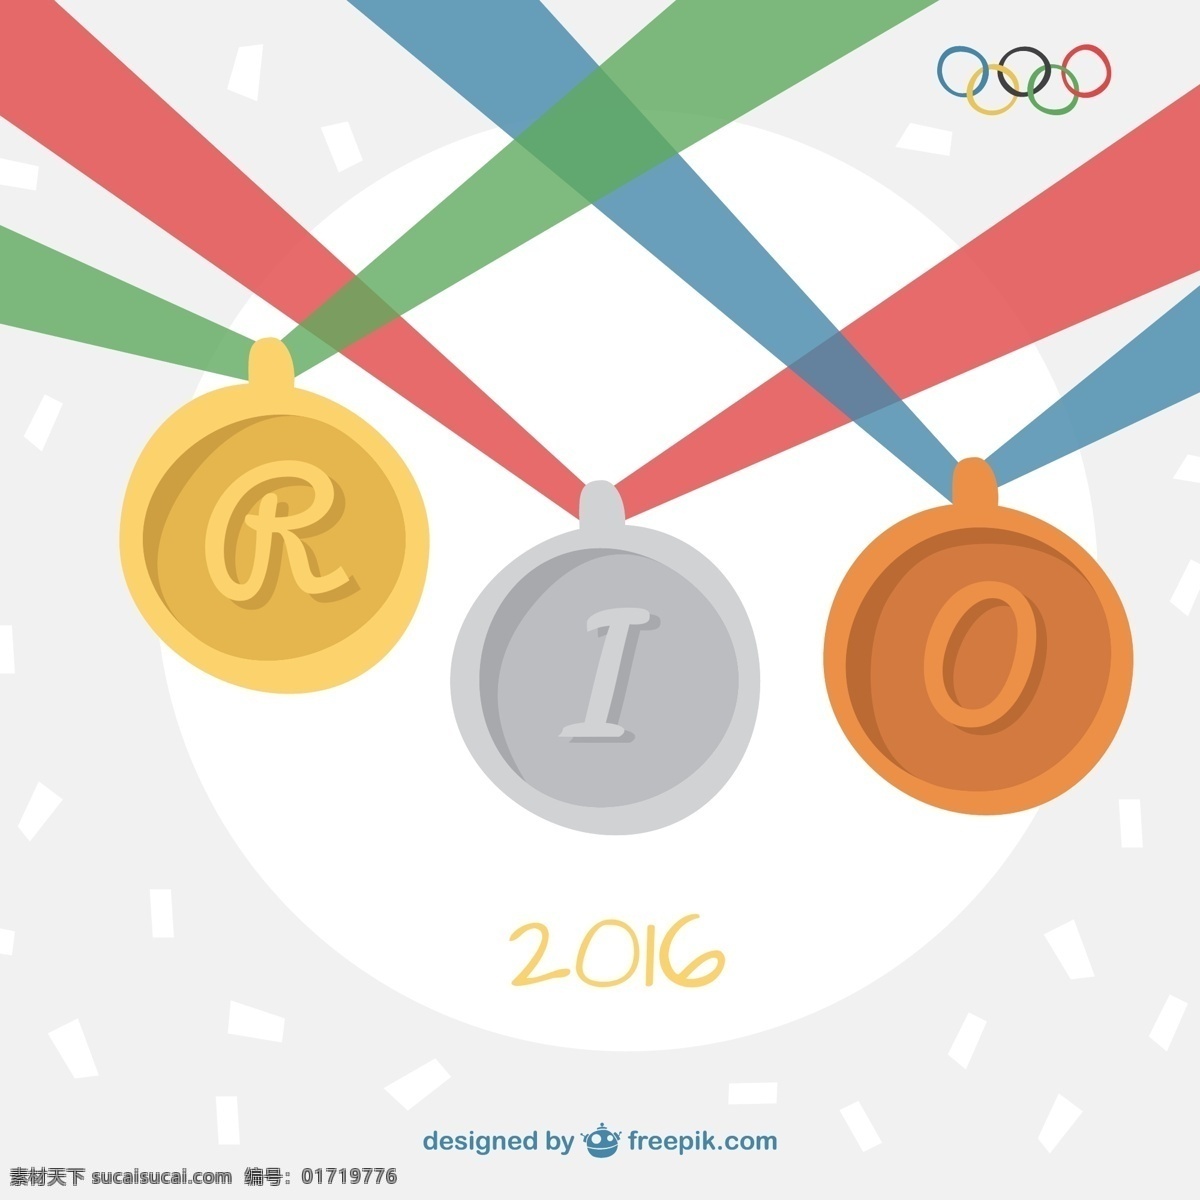 巴西 里约 2016 奥运 奖牌 背景 矢量图 背景夏季 健身健康 rio里约 奥运会 巴西奥运会 里约热内卢 夏季奥运会 31 届 夏季 奥林匹克 白色